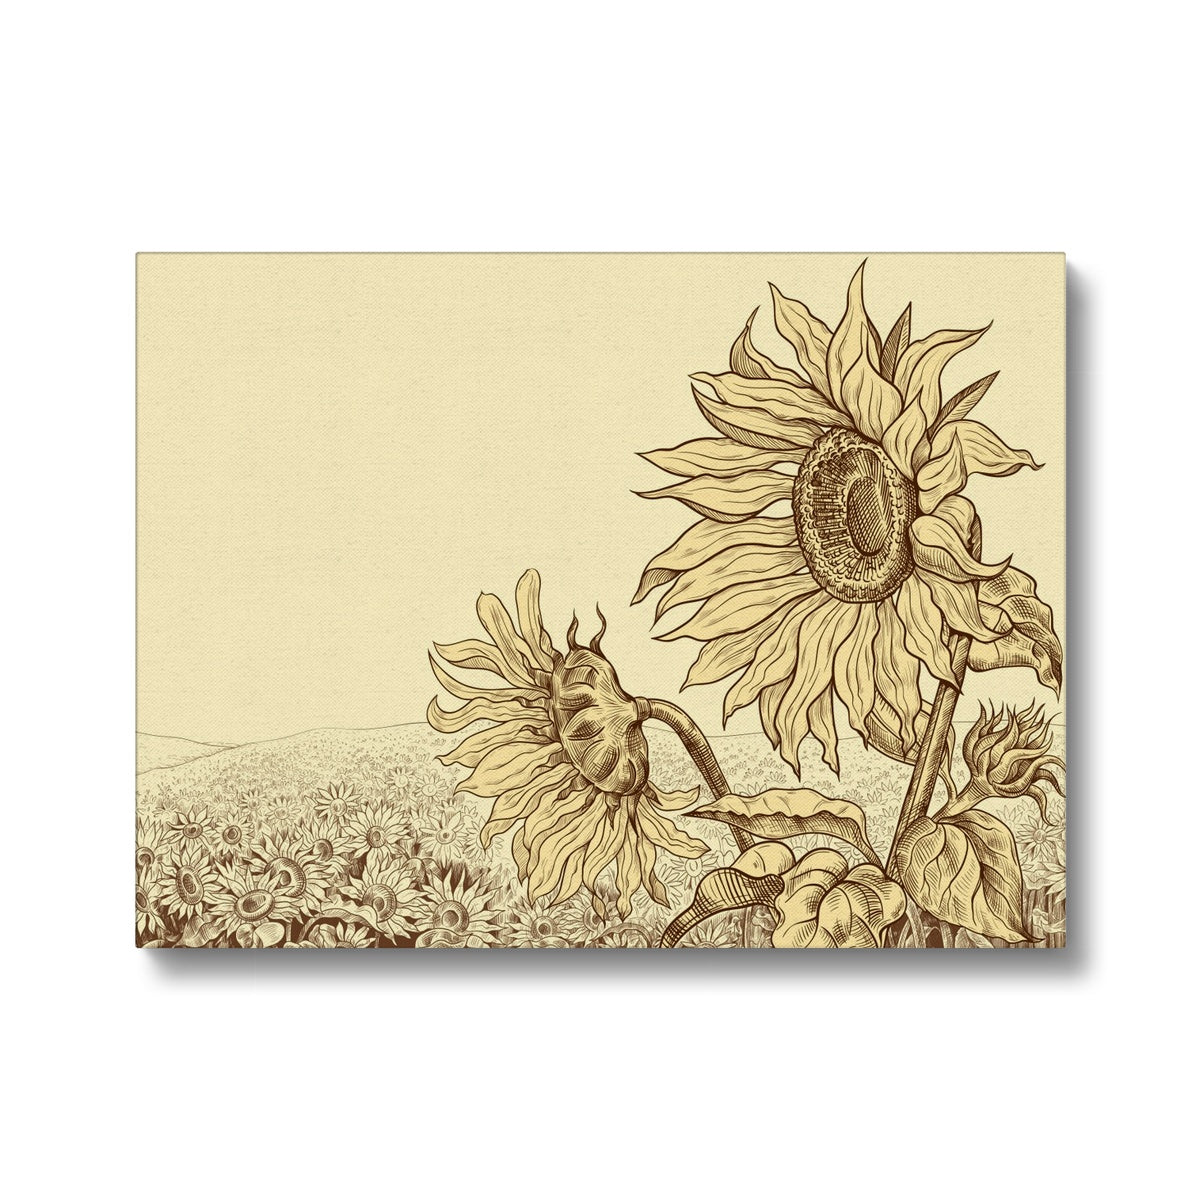 Wilted Sunflower Sketch Canvas